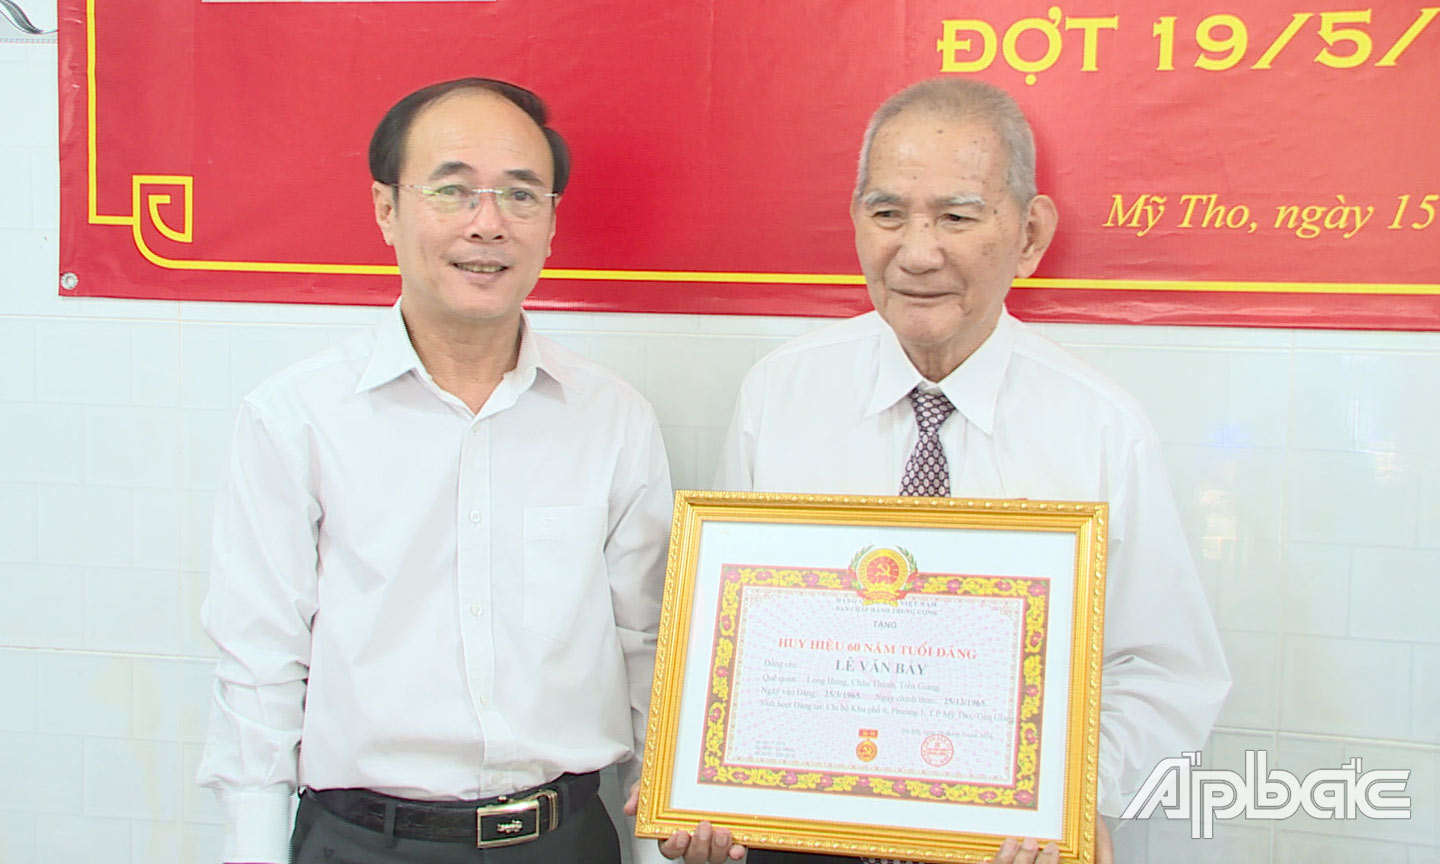 Đồng chí Trần Kim Trát trao tặng Huy hiệu 60 năm tuổi Đảng cho đảng viên Lê Văn Bảy.